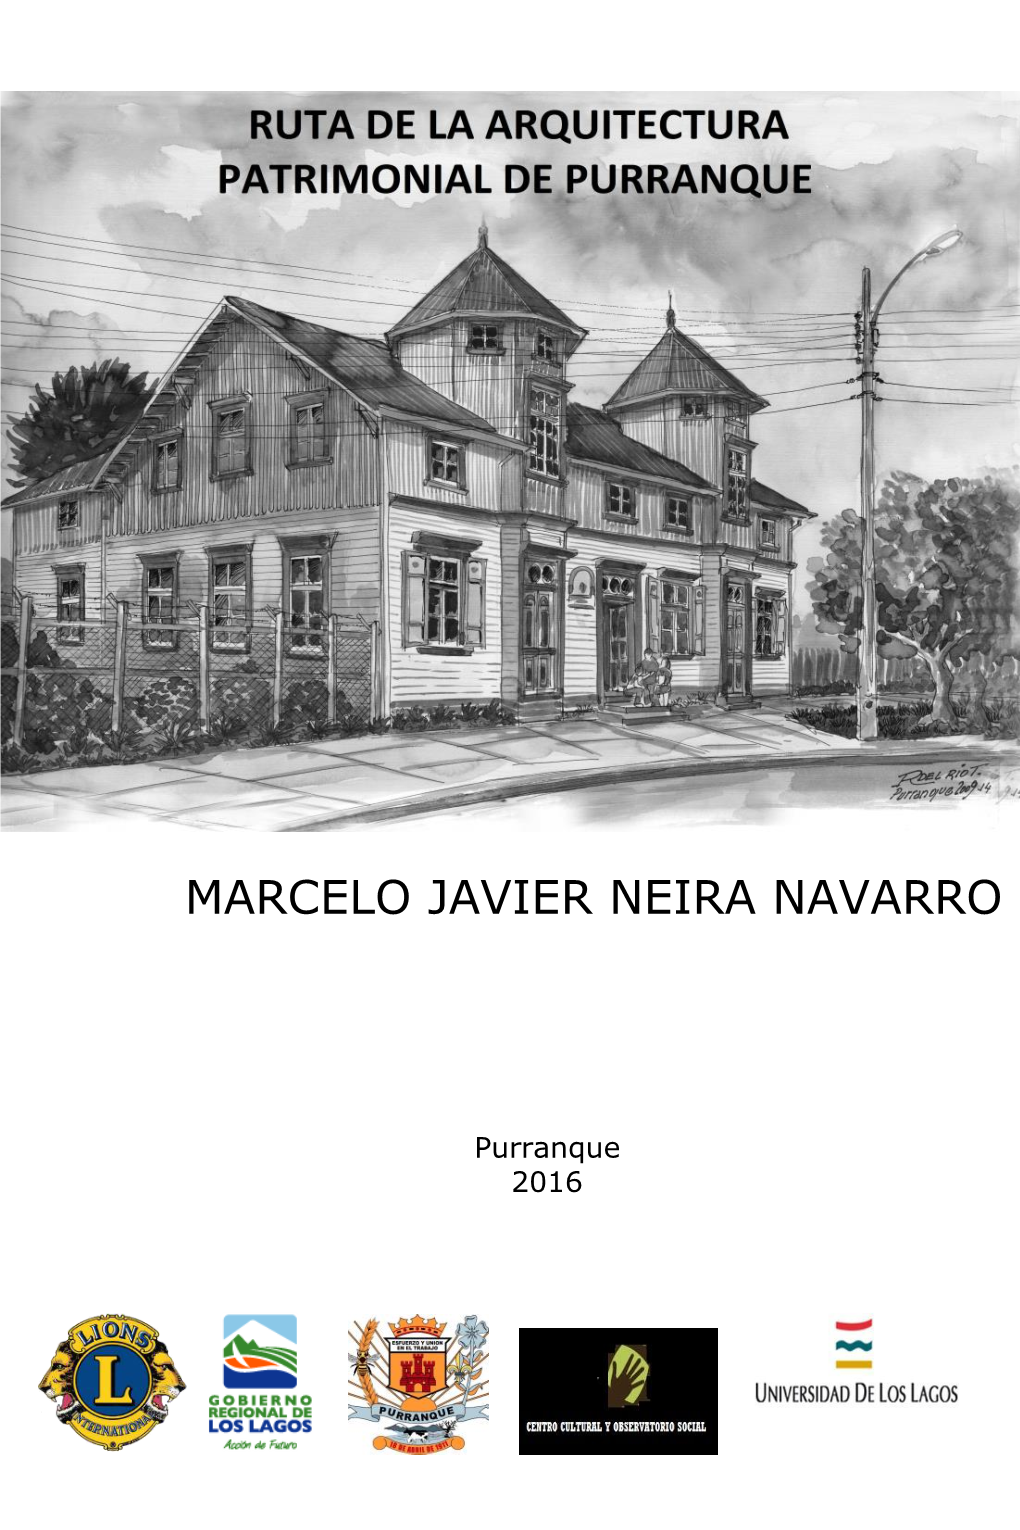 Marcelo Javier Neira Navarro